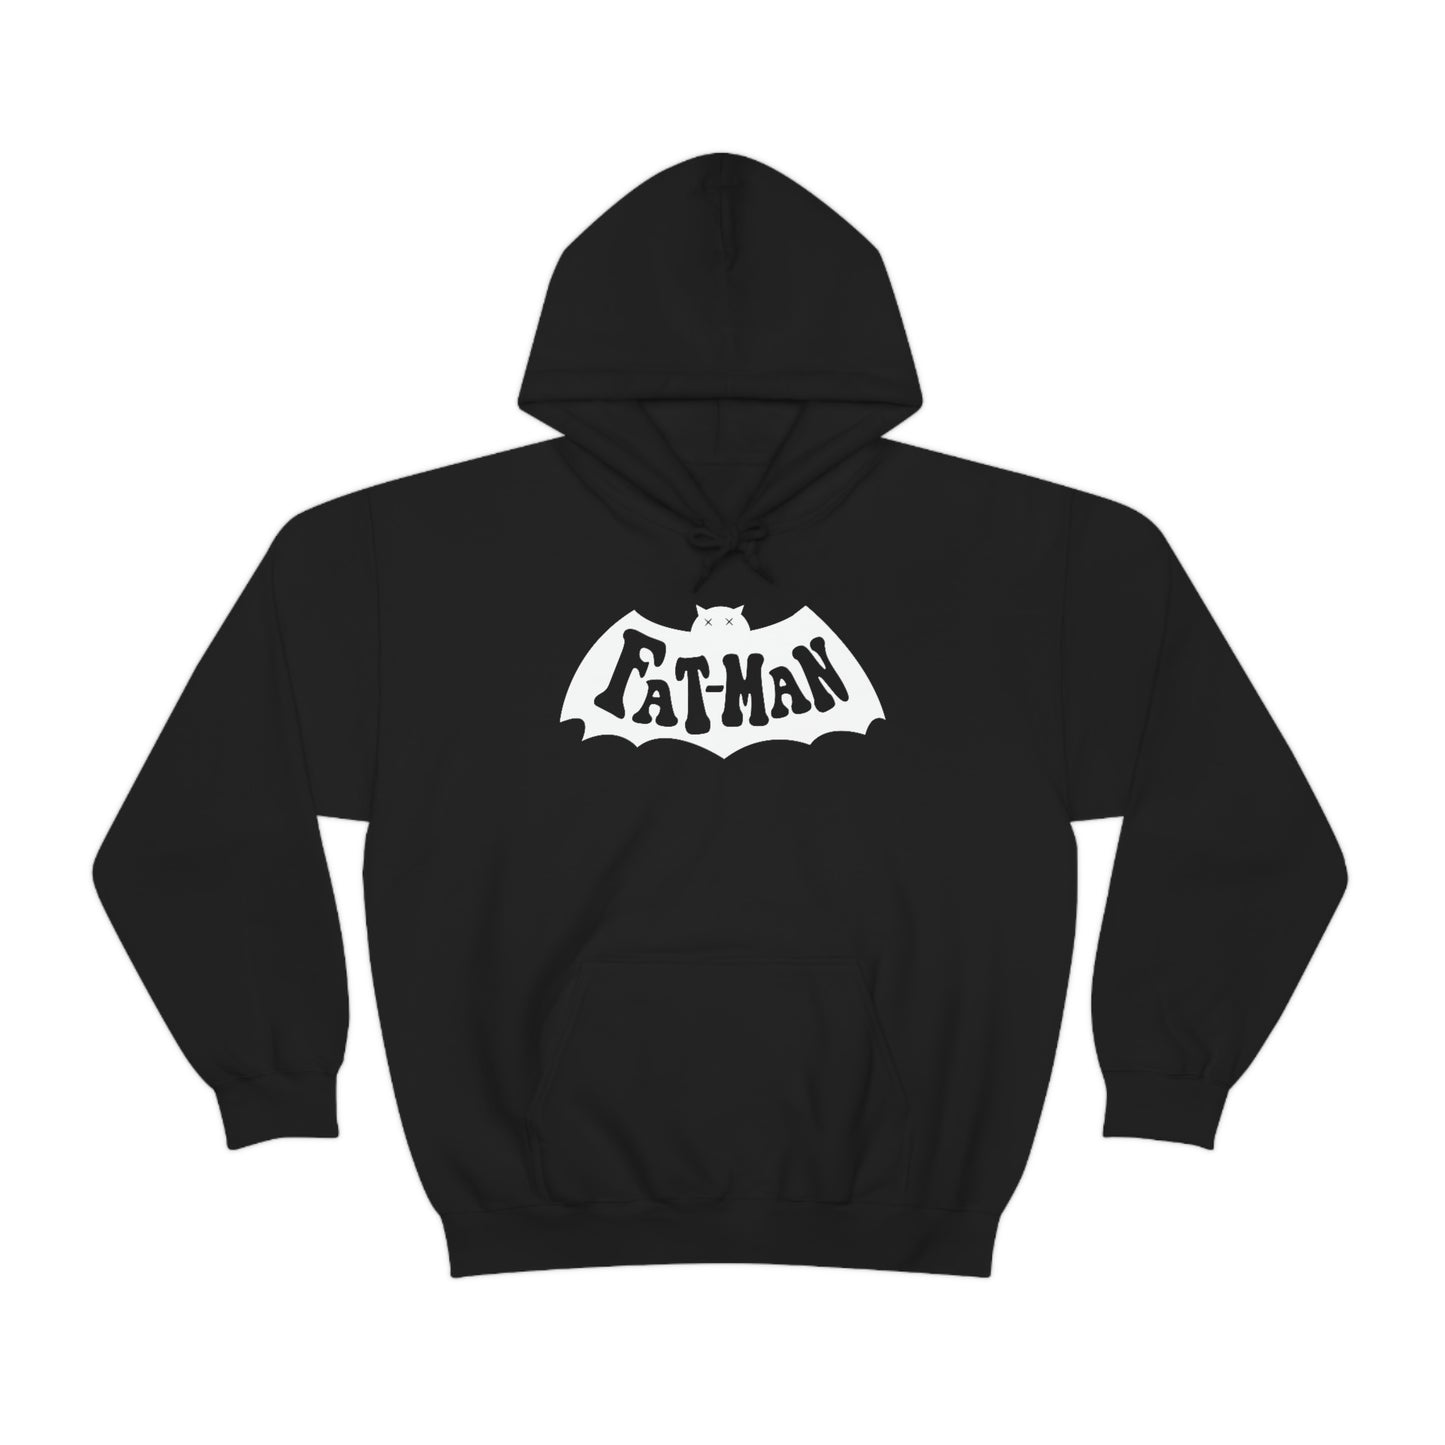 "Fatman" Unisex Heavy Blend™ Hooded Sweatshirt